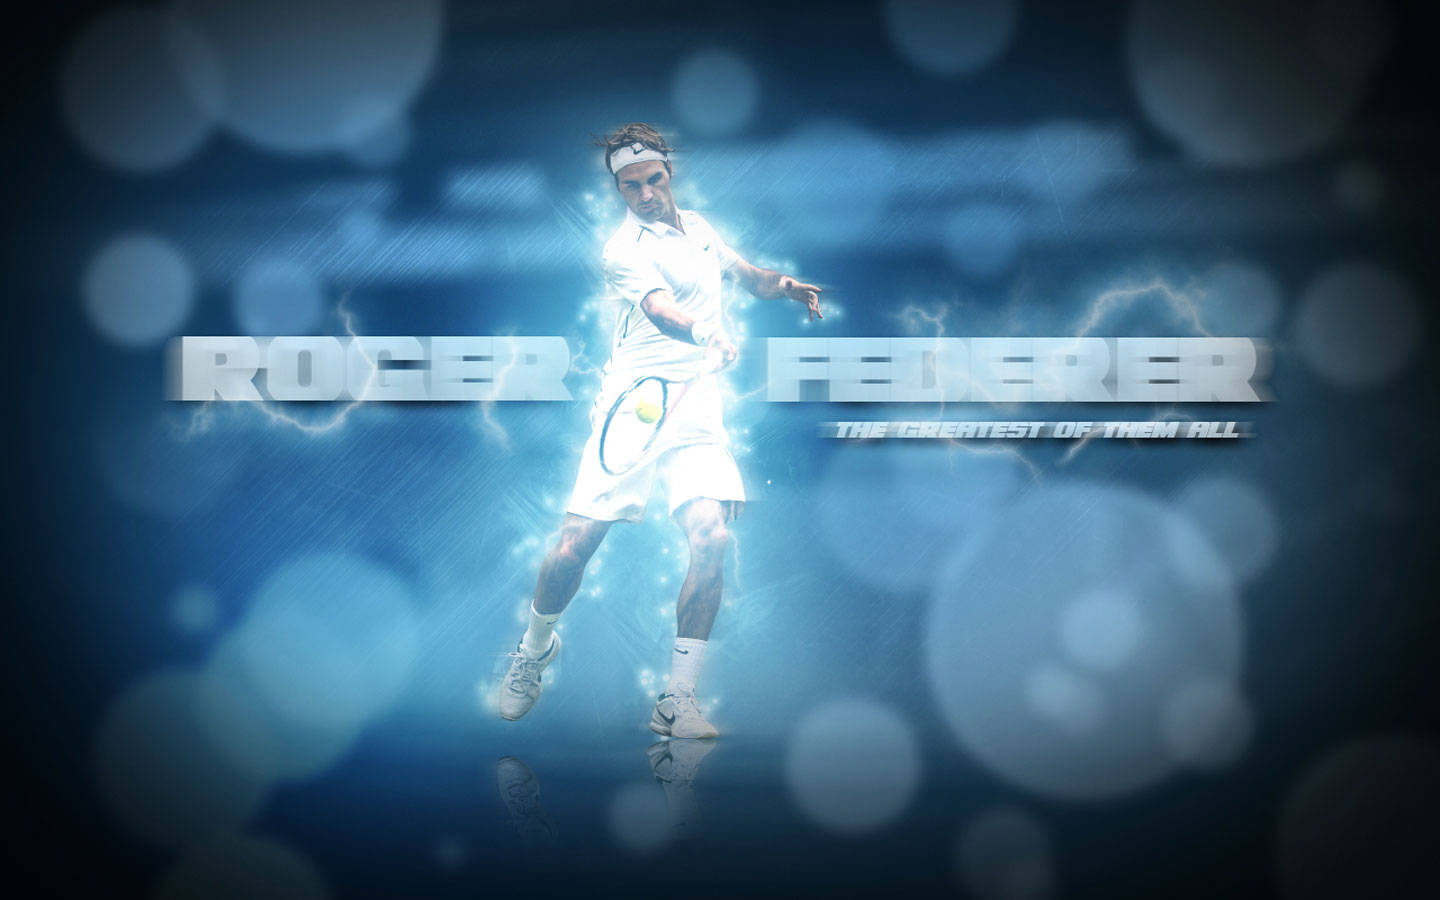 Roger Federer Digital Poster Wallpaper